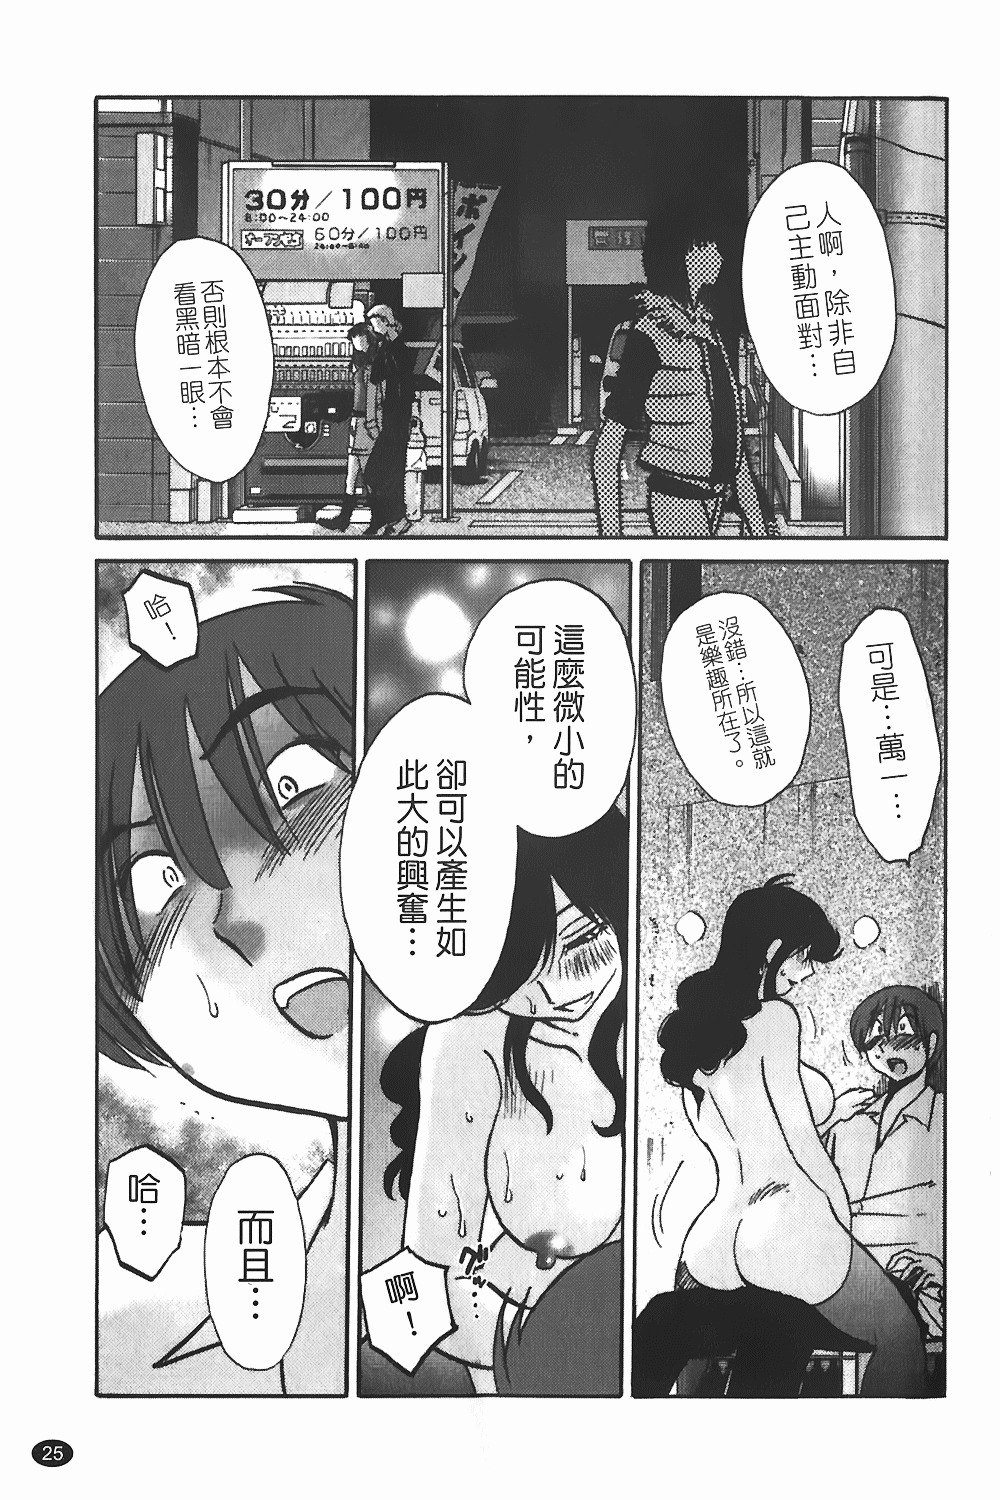 [TsuyaTsuya] Monokage no Iris 1 | 陰影中的伊利斯 1 [Chinese] page 22 full